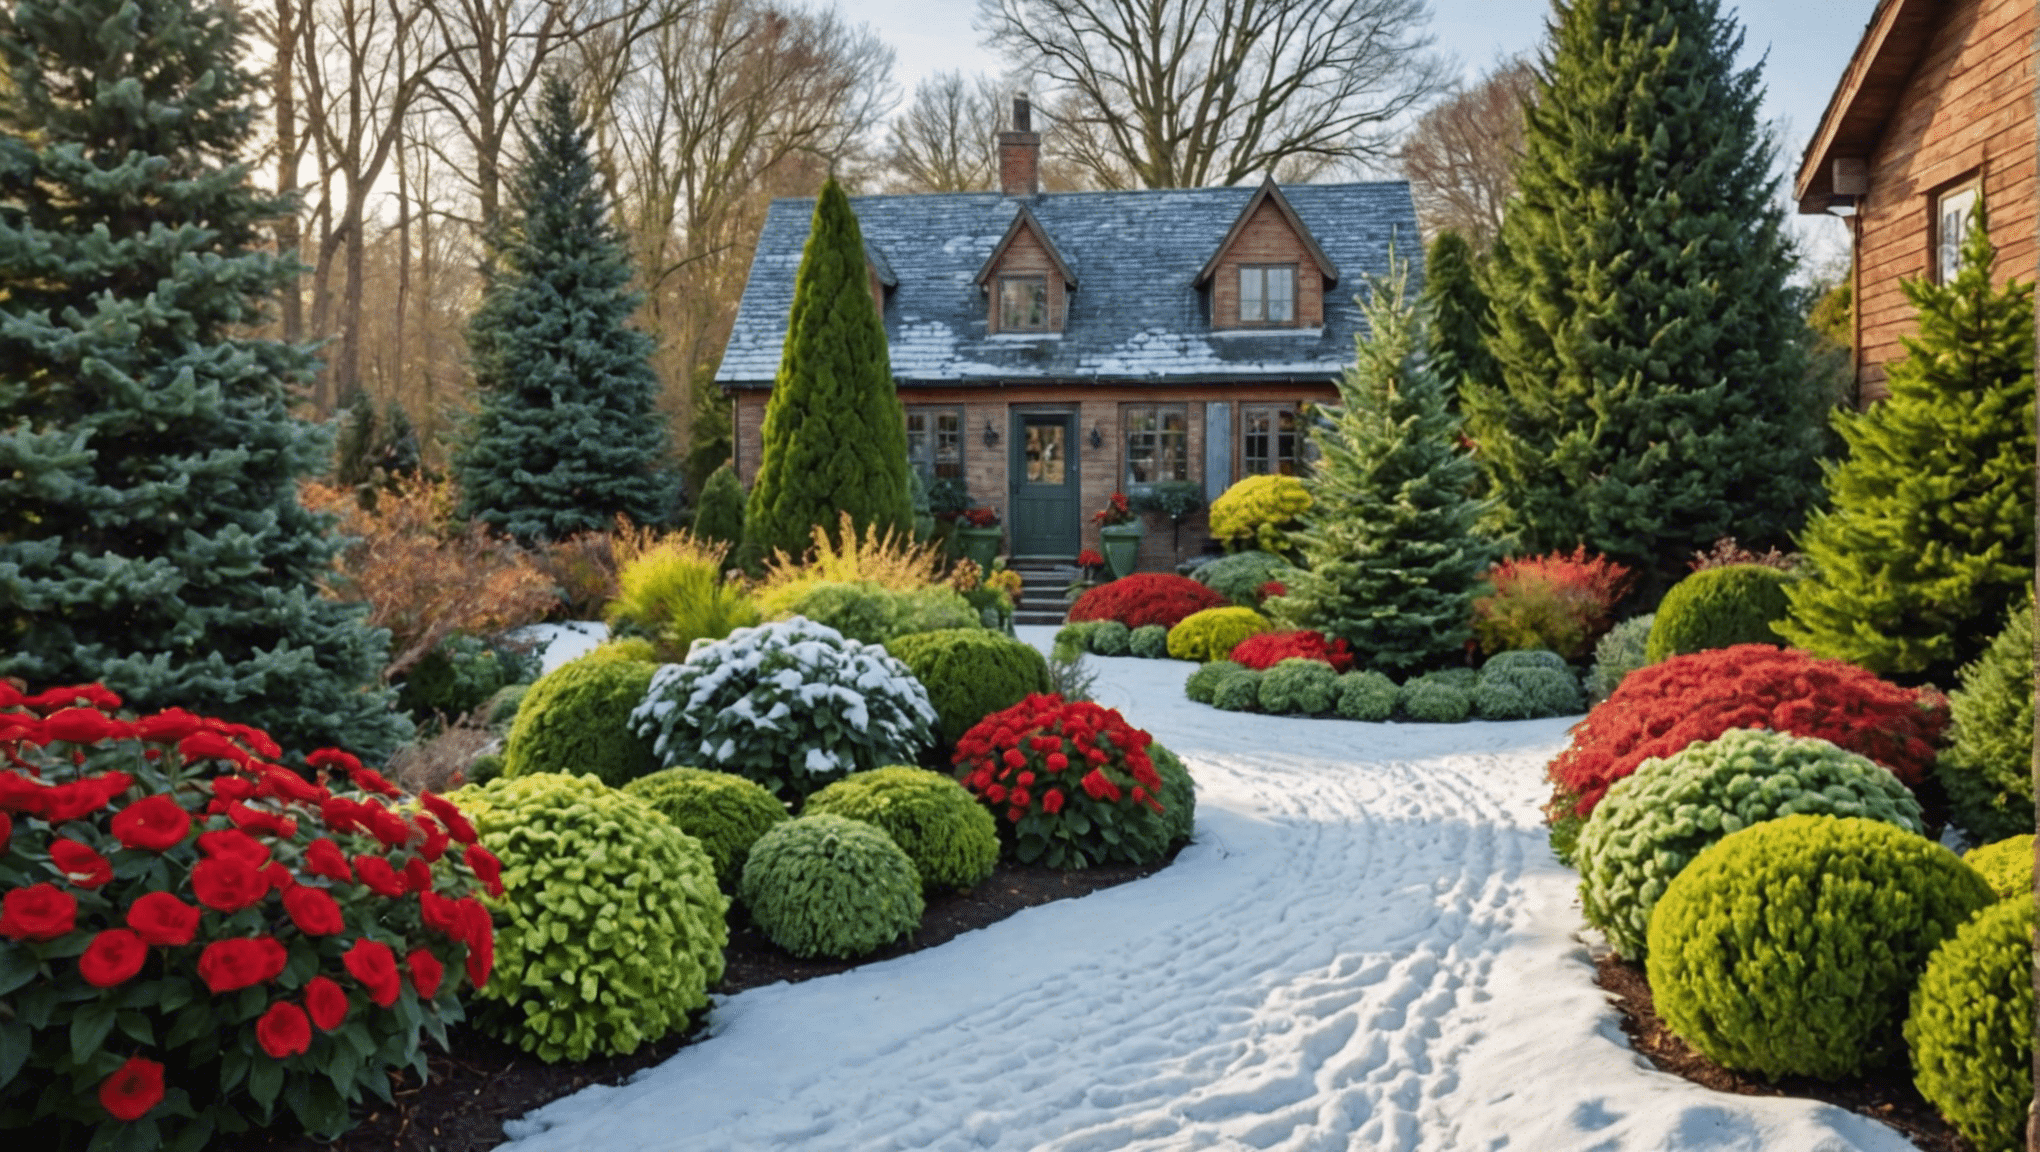 Explore las últimas ideas de jardinería de invierno para aprovechar al máximo la temporada. Descubra consejos, inspiración y consejos de expertos para su jardín de invierno.